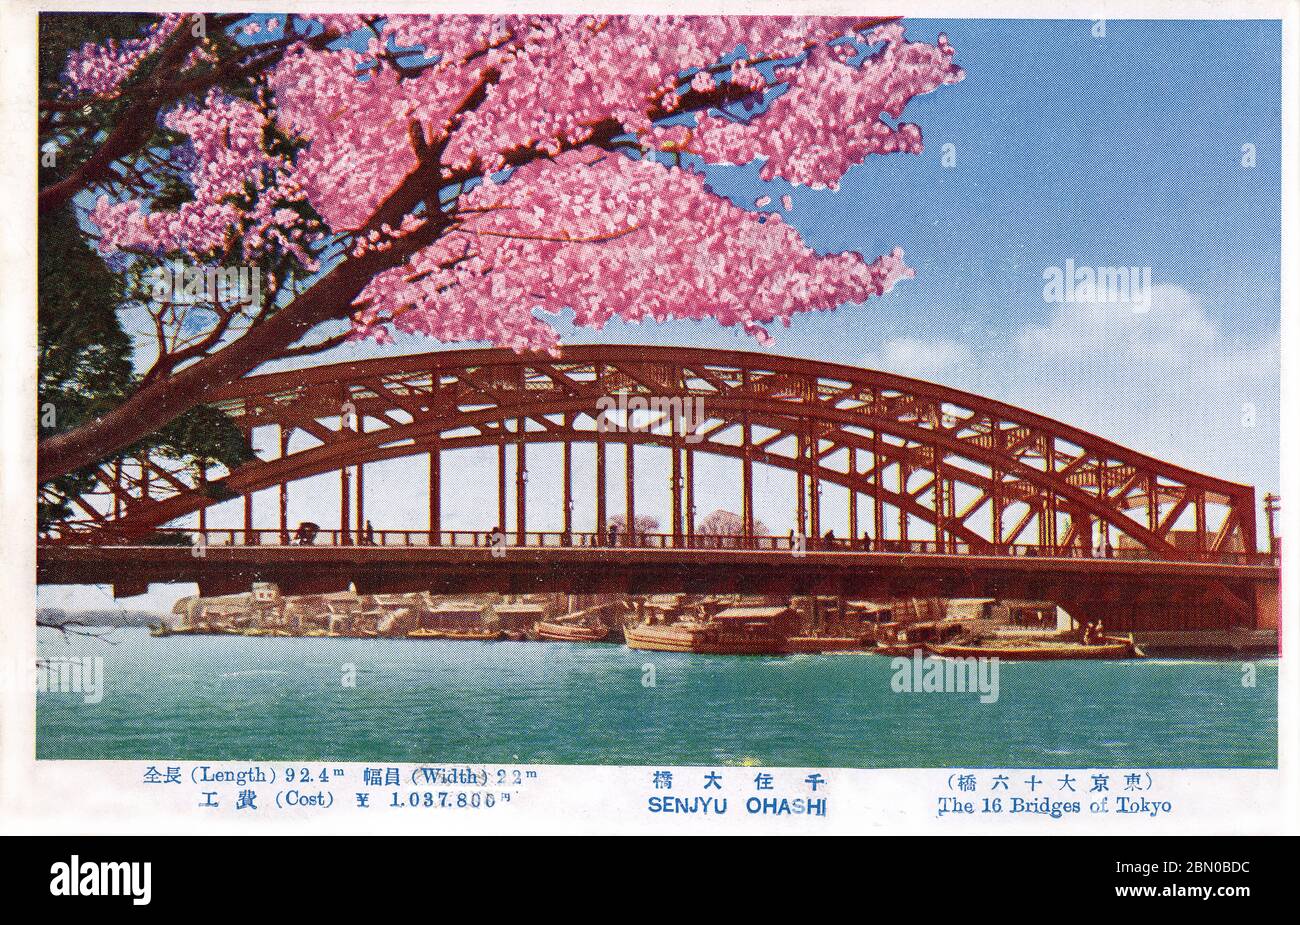 [ 1930 Japón - Puente Senju-ohashi, Tokio ] — el puente Senju-ohashi (千住大橋) sobre el río Sumidagawa en Tokio, CA. 1930 (Shola 5). El puente fue completado en 1927 (Shola 2), sustituyendo un puente más antiguo. En 1596, el puente Senju-ohashi fue el primer puente que cruzaba el río Sumidagawa. De la serie de postales los 16 Puentes de Tokio (東京大十六橋), aparentemente publicados para coincidir con la celebración de la finalización oficial de la reconstrucción sísmica de Tokio en marzo de 1930. postal vintage del siglo xx. Foto de stock